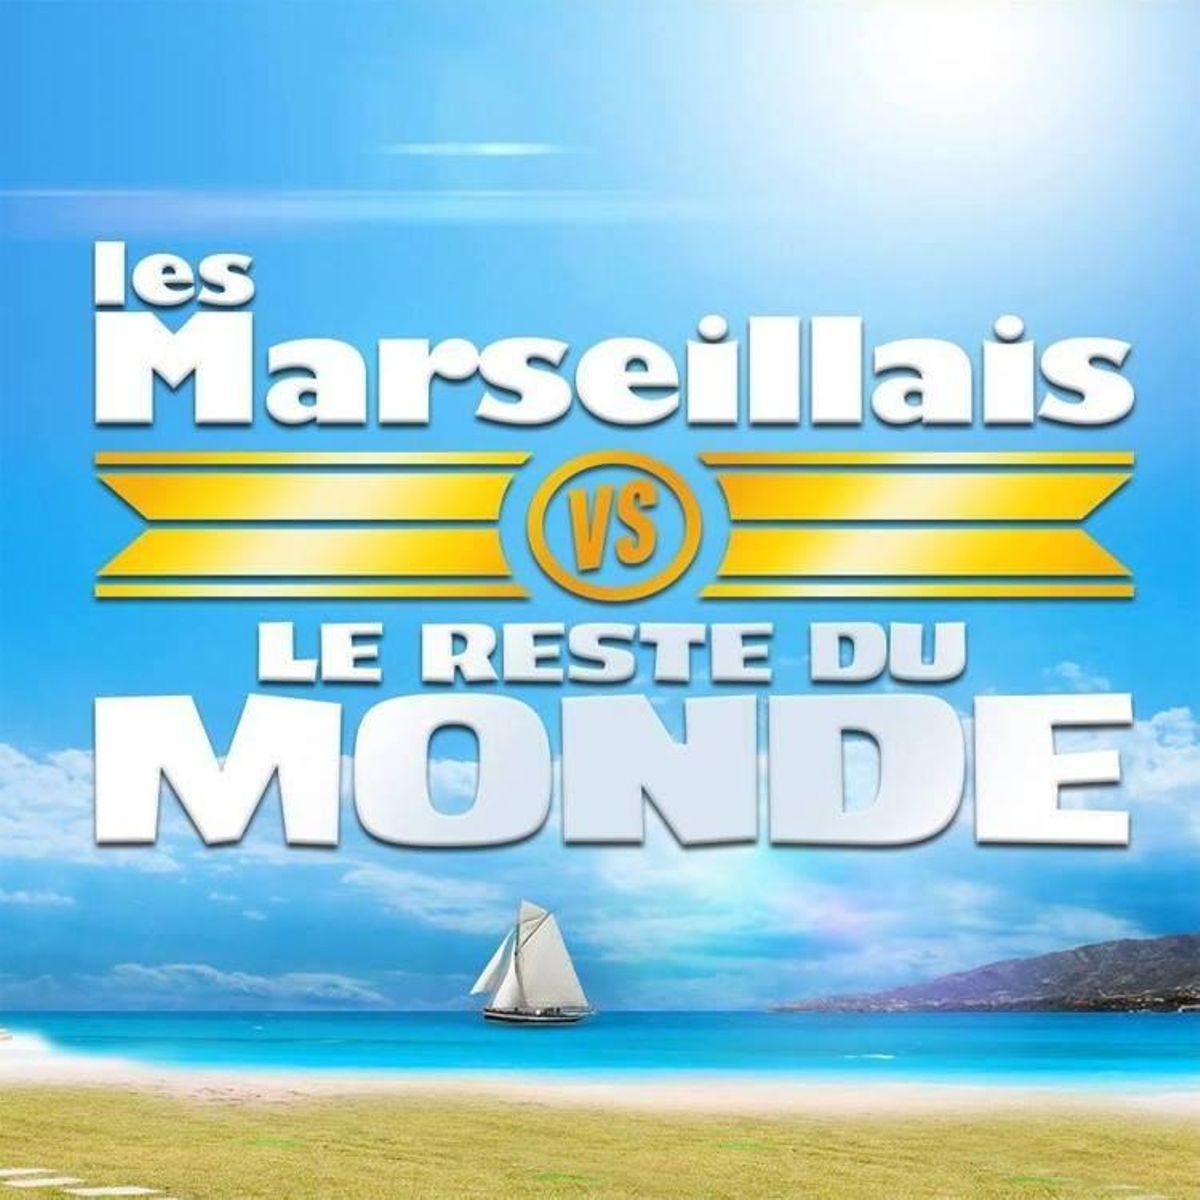 Les Marseillais vs le Reste du Monde 5 : l’équipe gagnante dévoilée par erreur ?